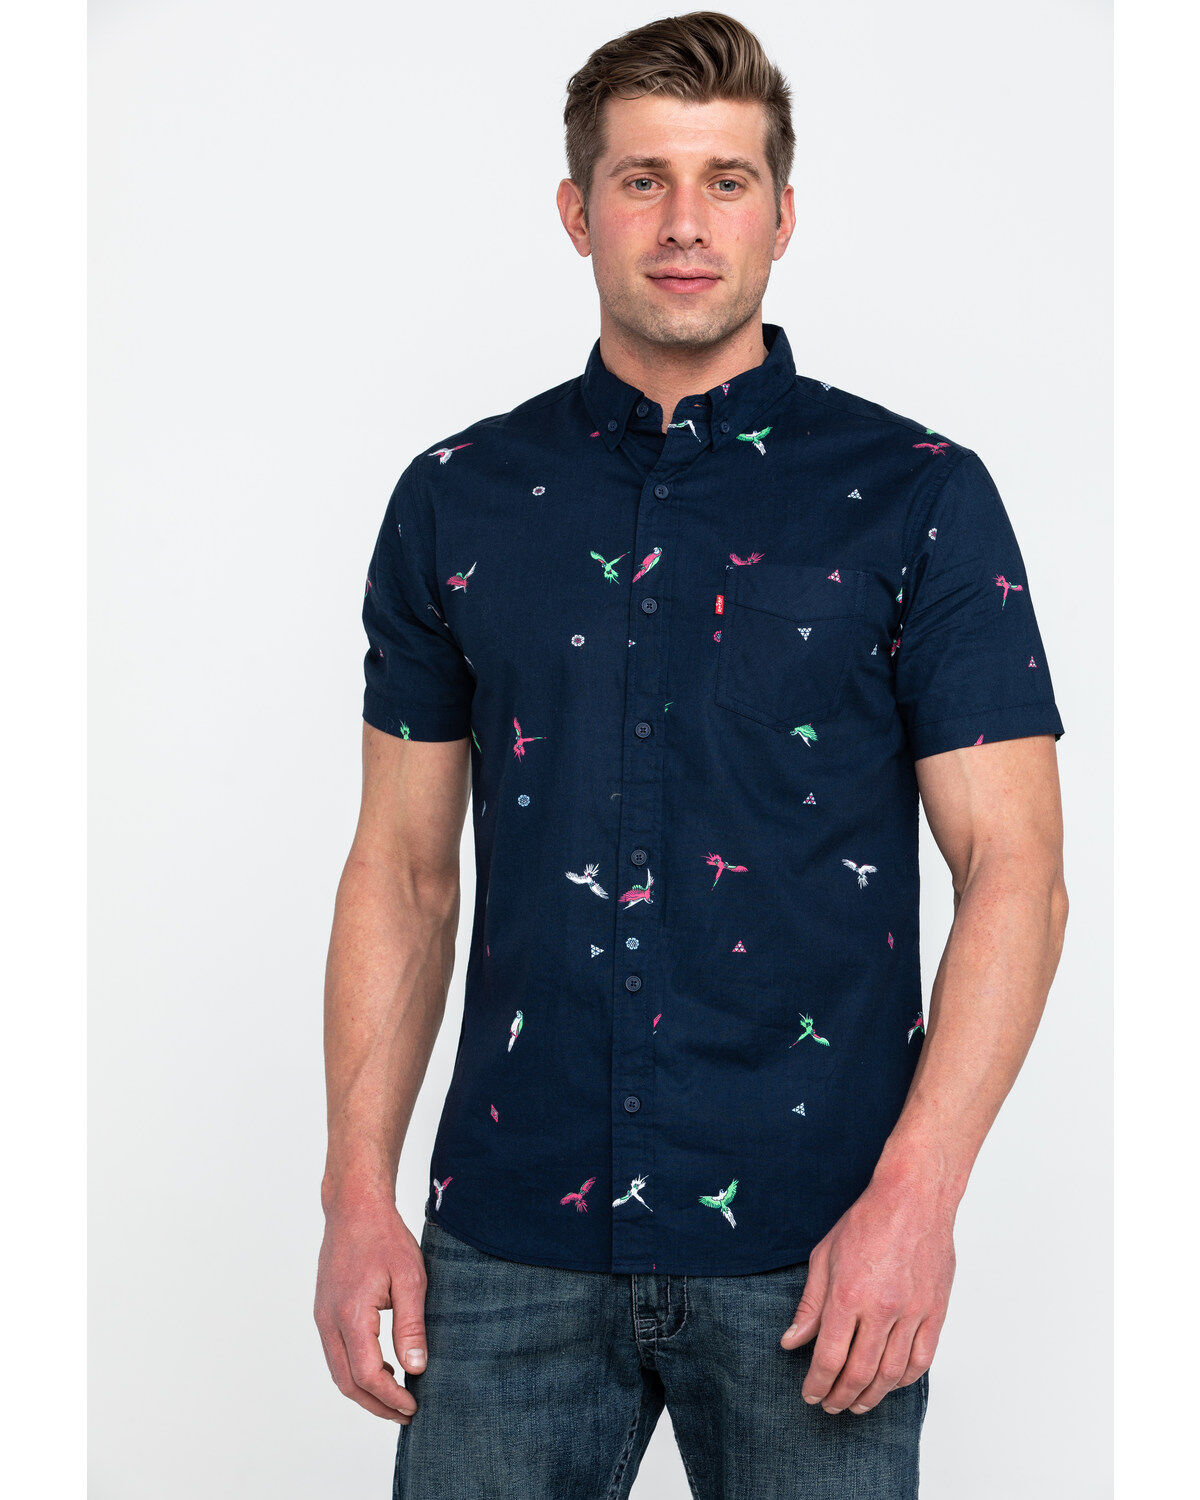 levis parrot shirt